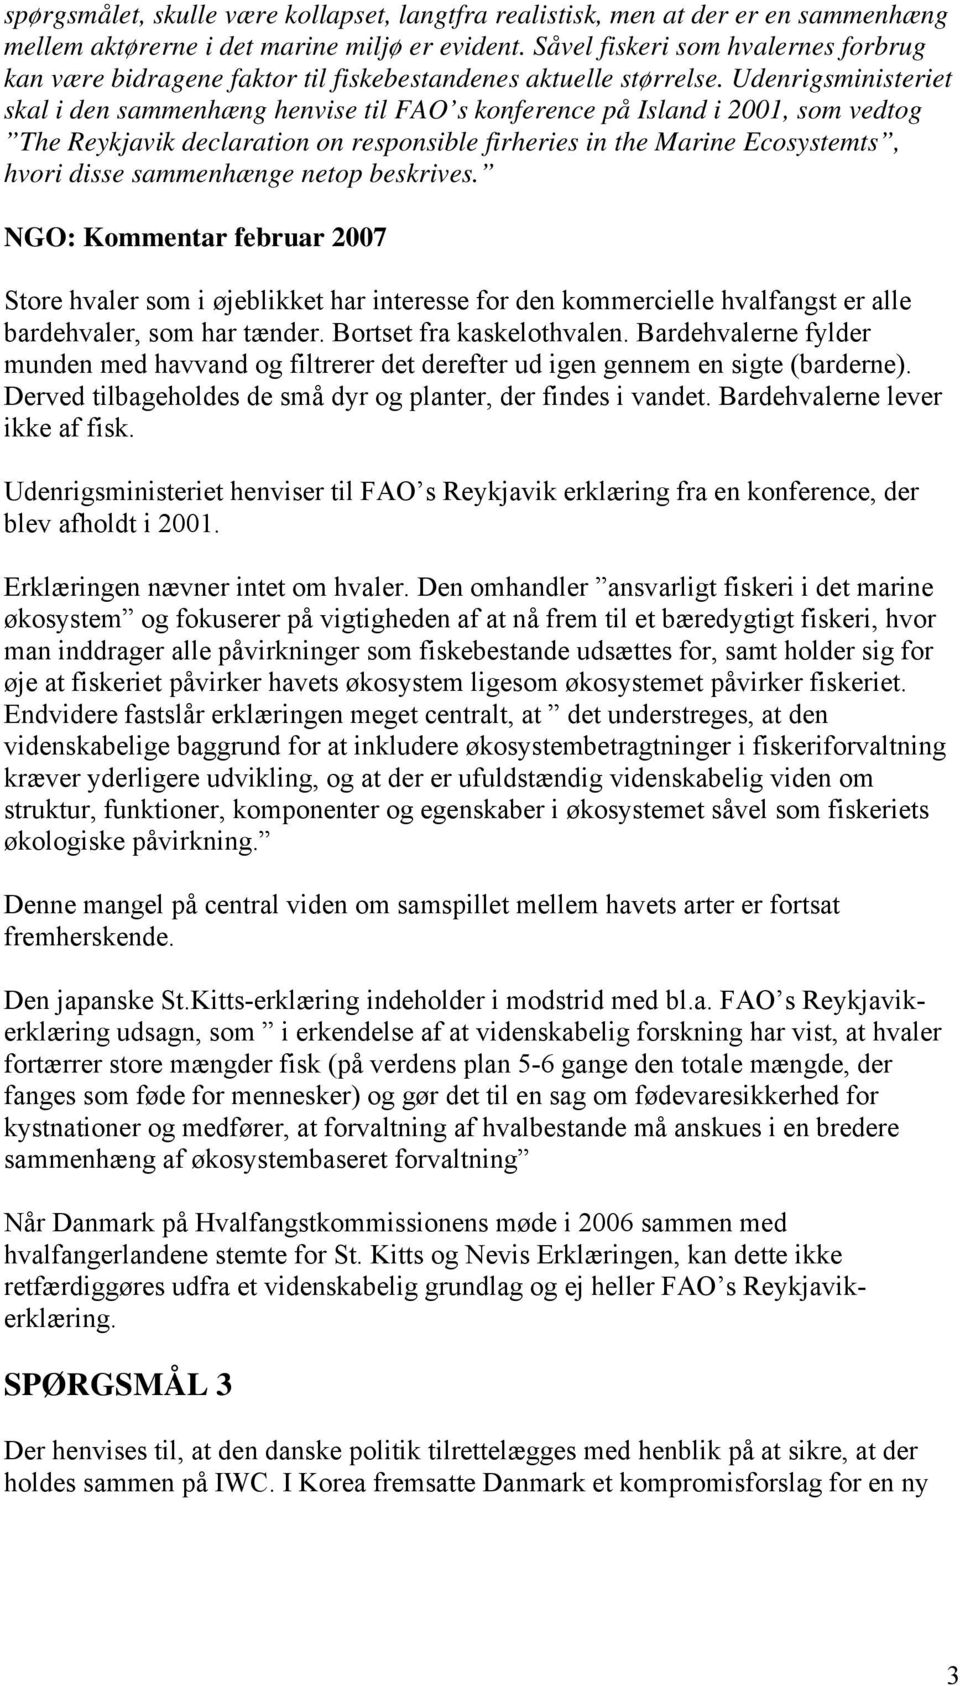 Udenrigsministeriet skal i den sammenhæng henvise til FAO s konference på Island i 2001, som vedtog The Reykjavik declaration on responsible firheries in the Marine Ecosystemts, hvori disse